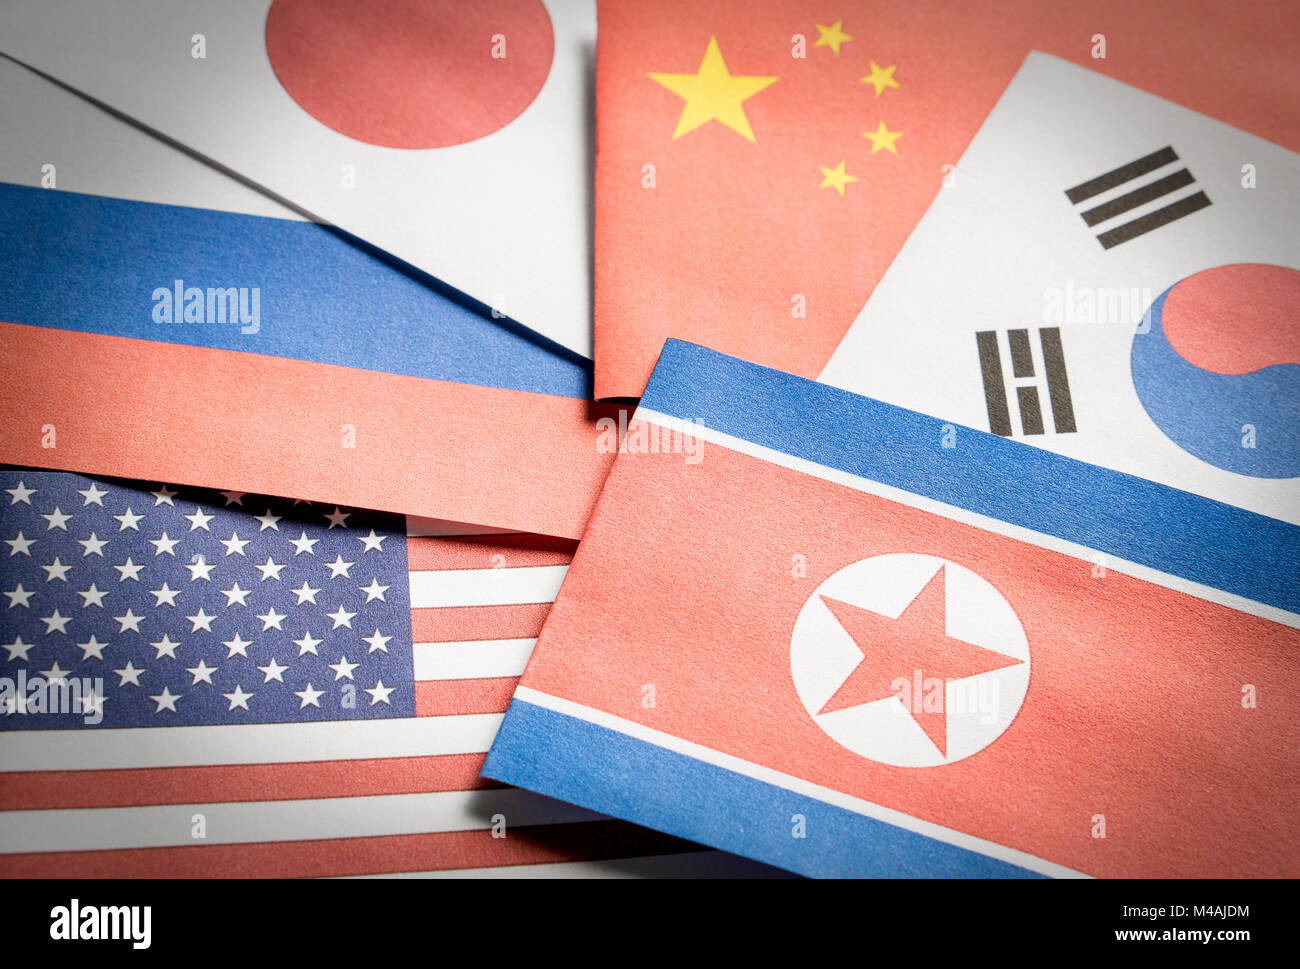 Le pavillon de la Corée du Nord, Corée du Sud, États-Unis d'Amérique (USA), la Russie, le Japon et la Chine en papier. Banque D'Images